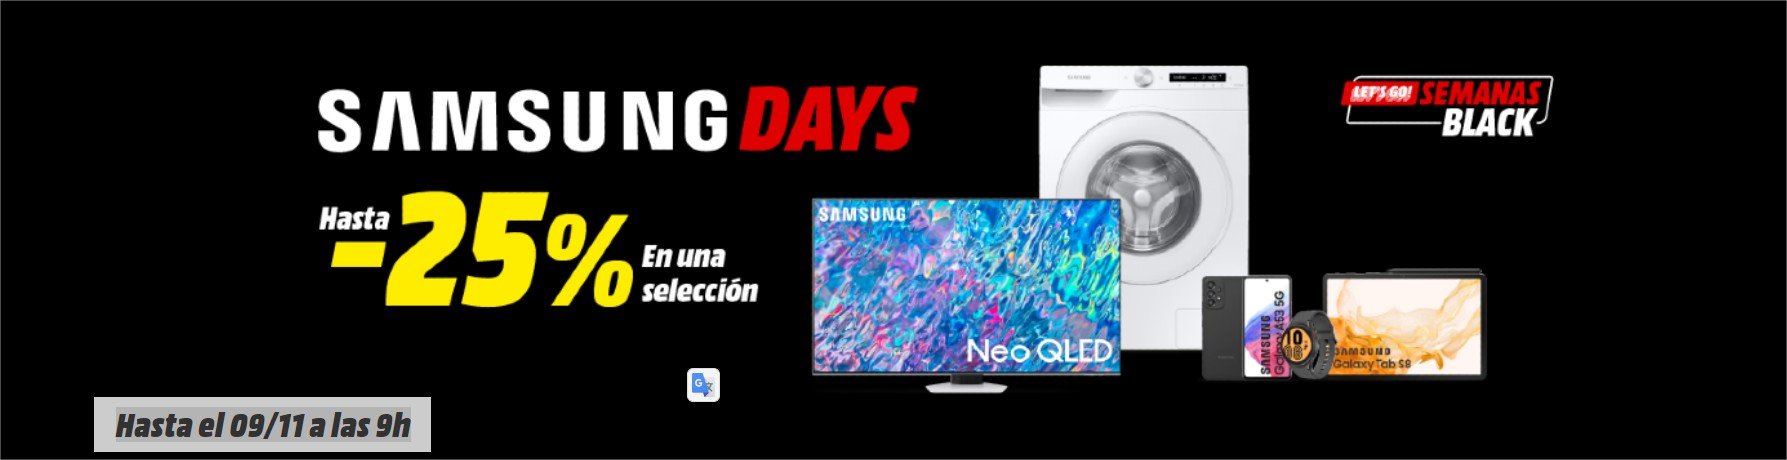 Samsung Days